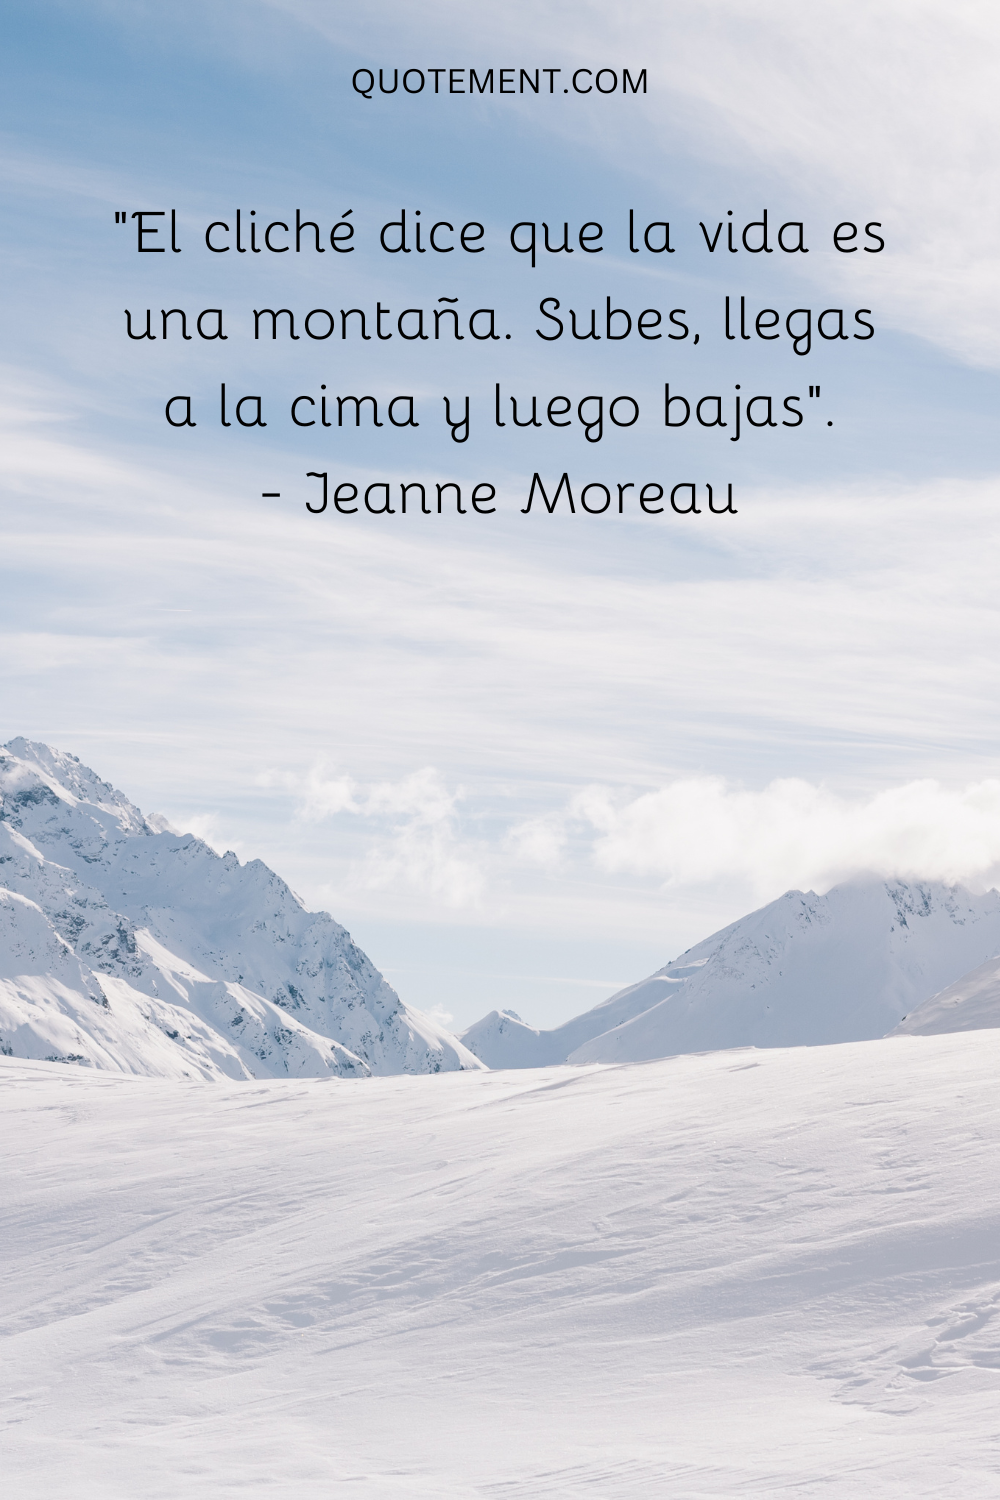 "El cliché dice que la vida es una montaña. Subes, llegas a la cima y luego bajas". - Jeanne Moreau